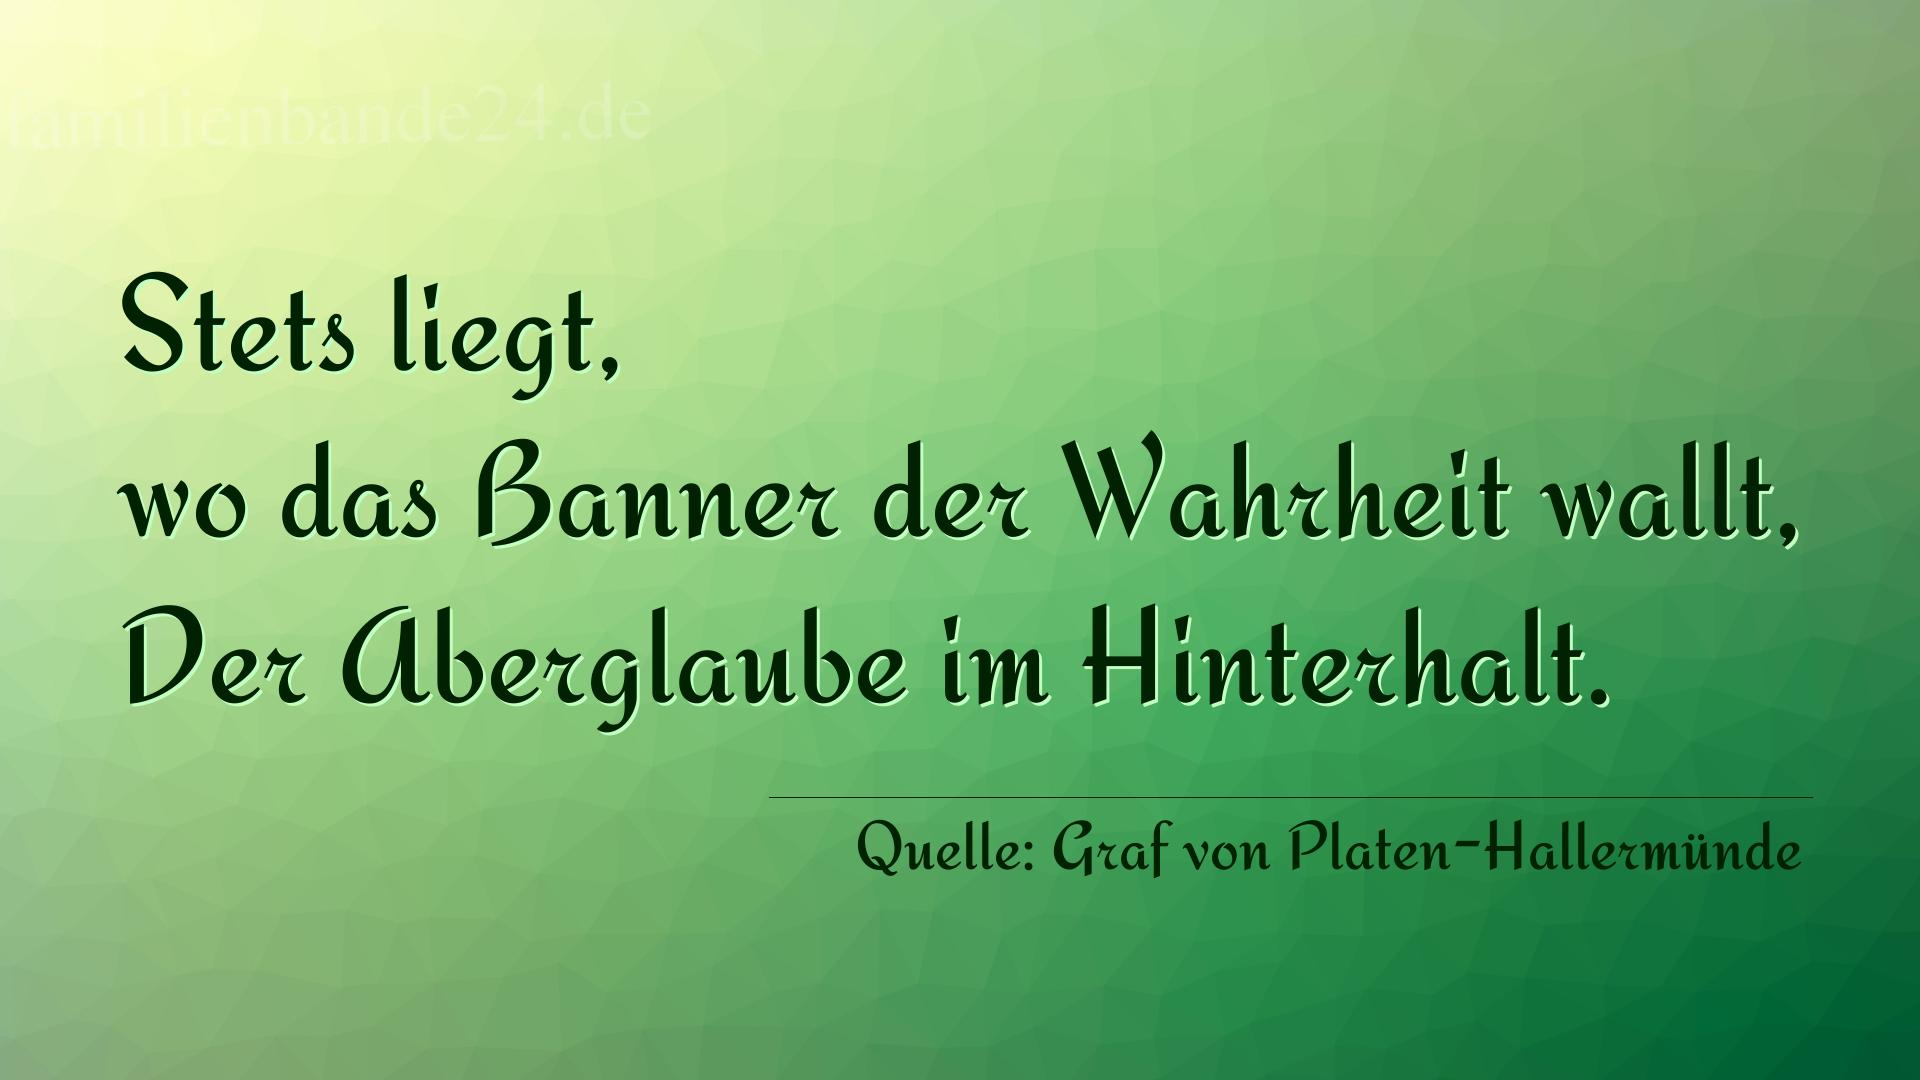 Aphorismus Nr. 1324 (von Graf von Platen-Hallermünde): "Stets liegt, wo das Banner der Wahrheit wallt, Der Abergl [...]